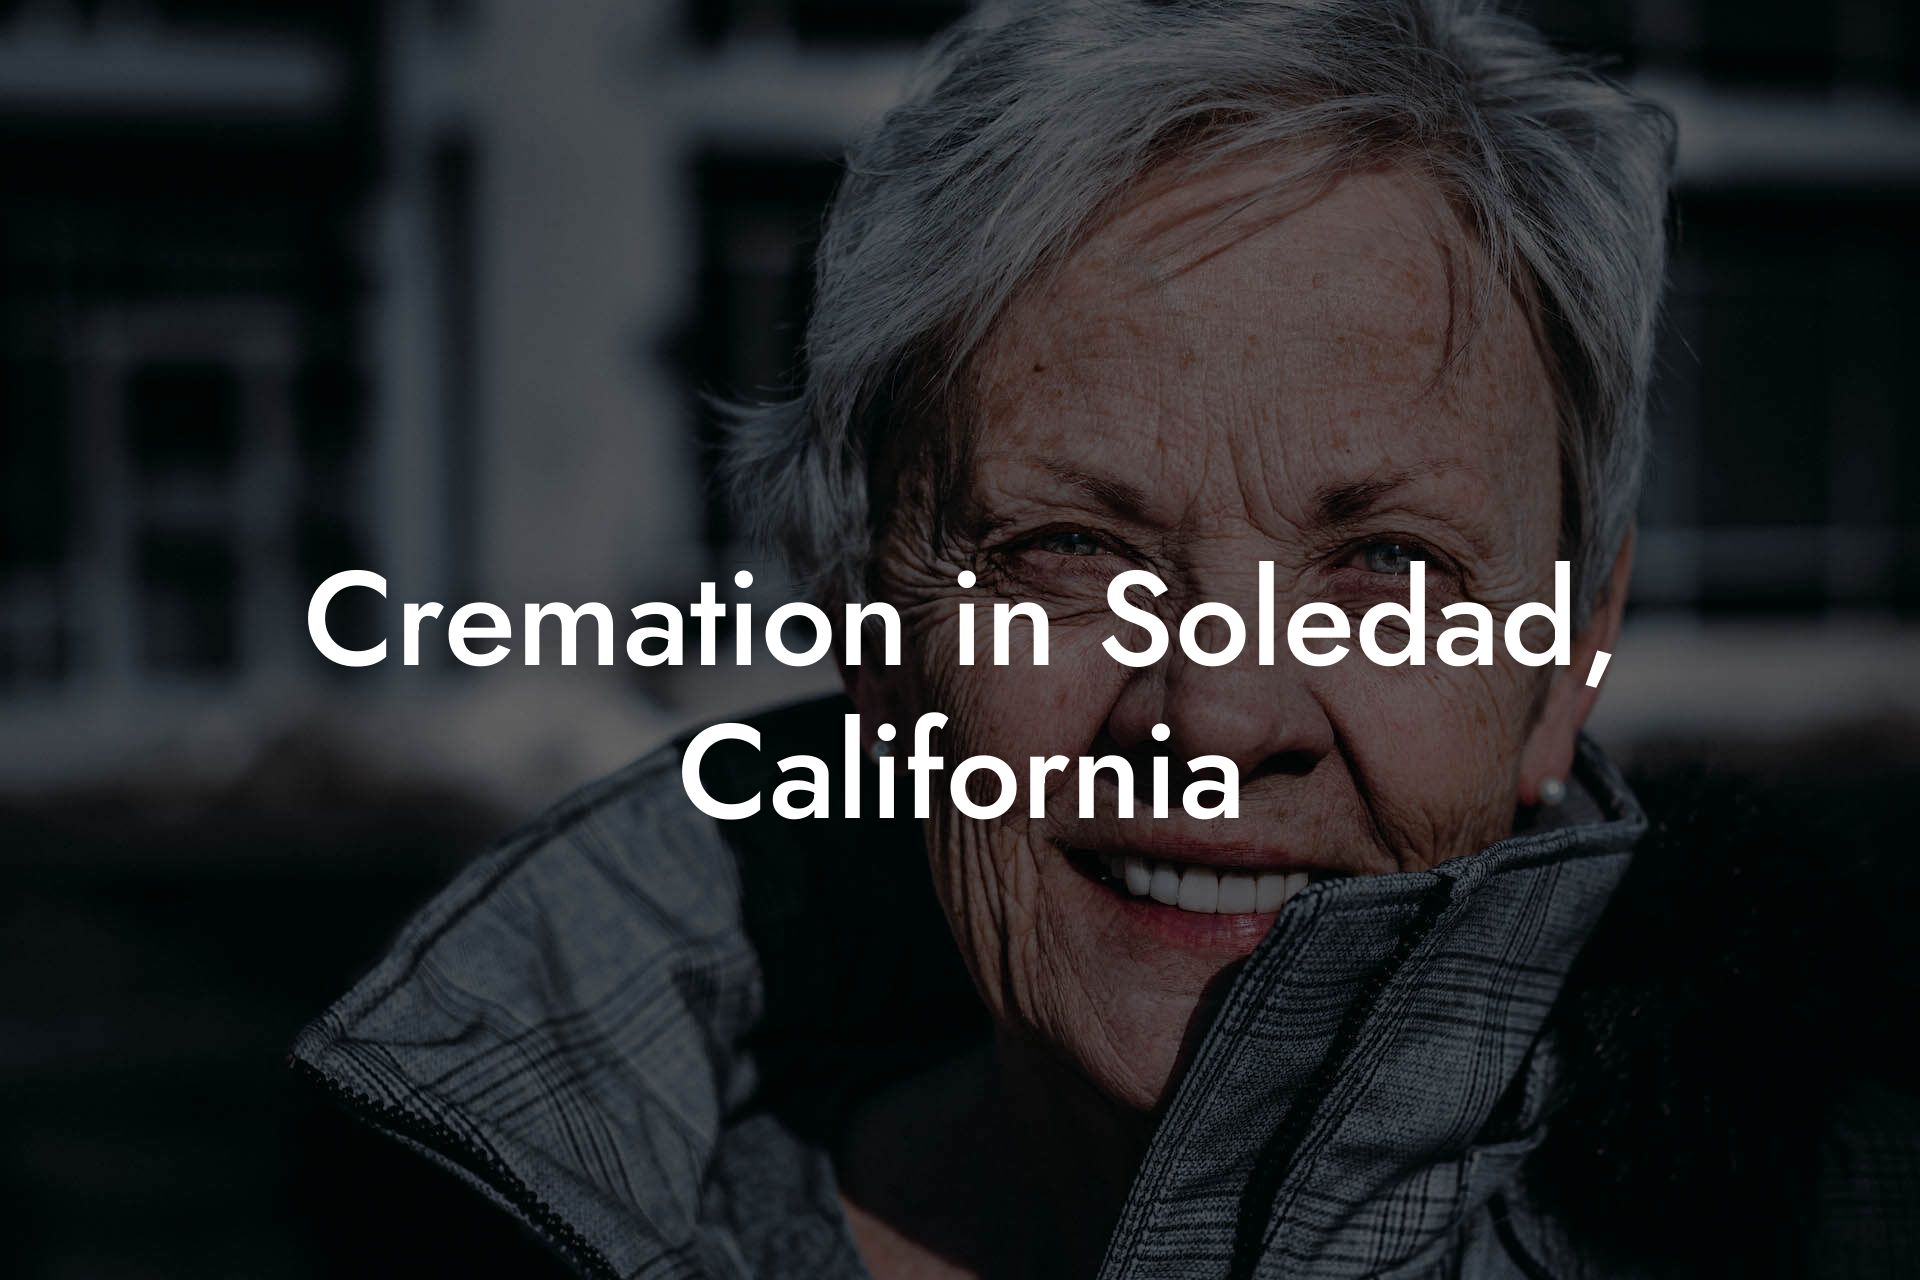 Cremation in Soledad, California